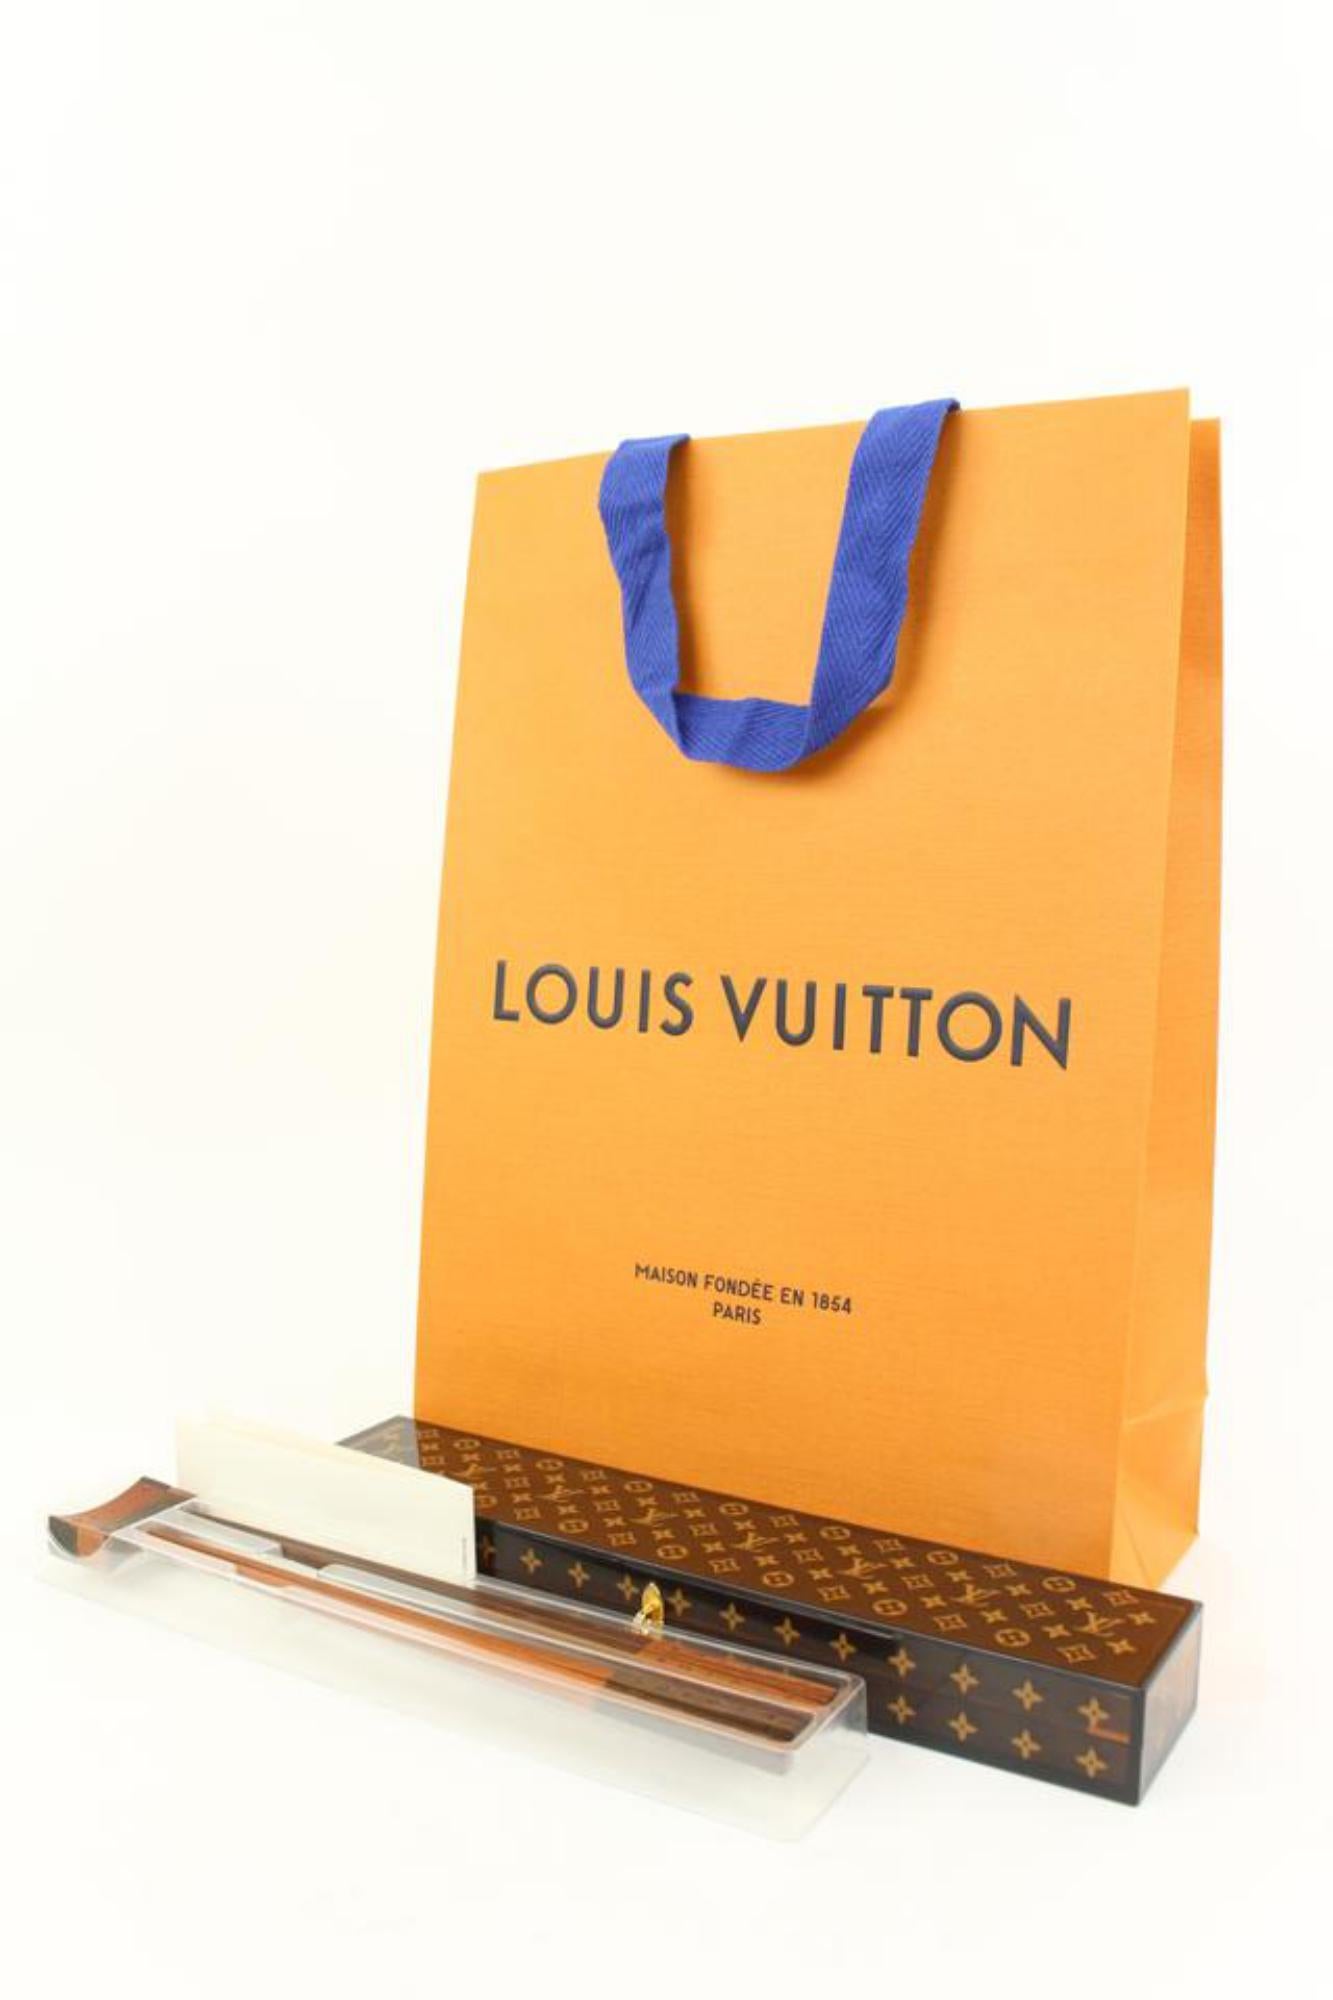 Louis Vuitton Limited Edition Monogram Chopsticks with Scott Box 30lk37s
Measurements: Length:  11